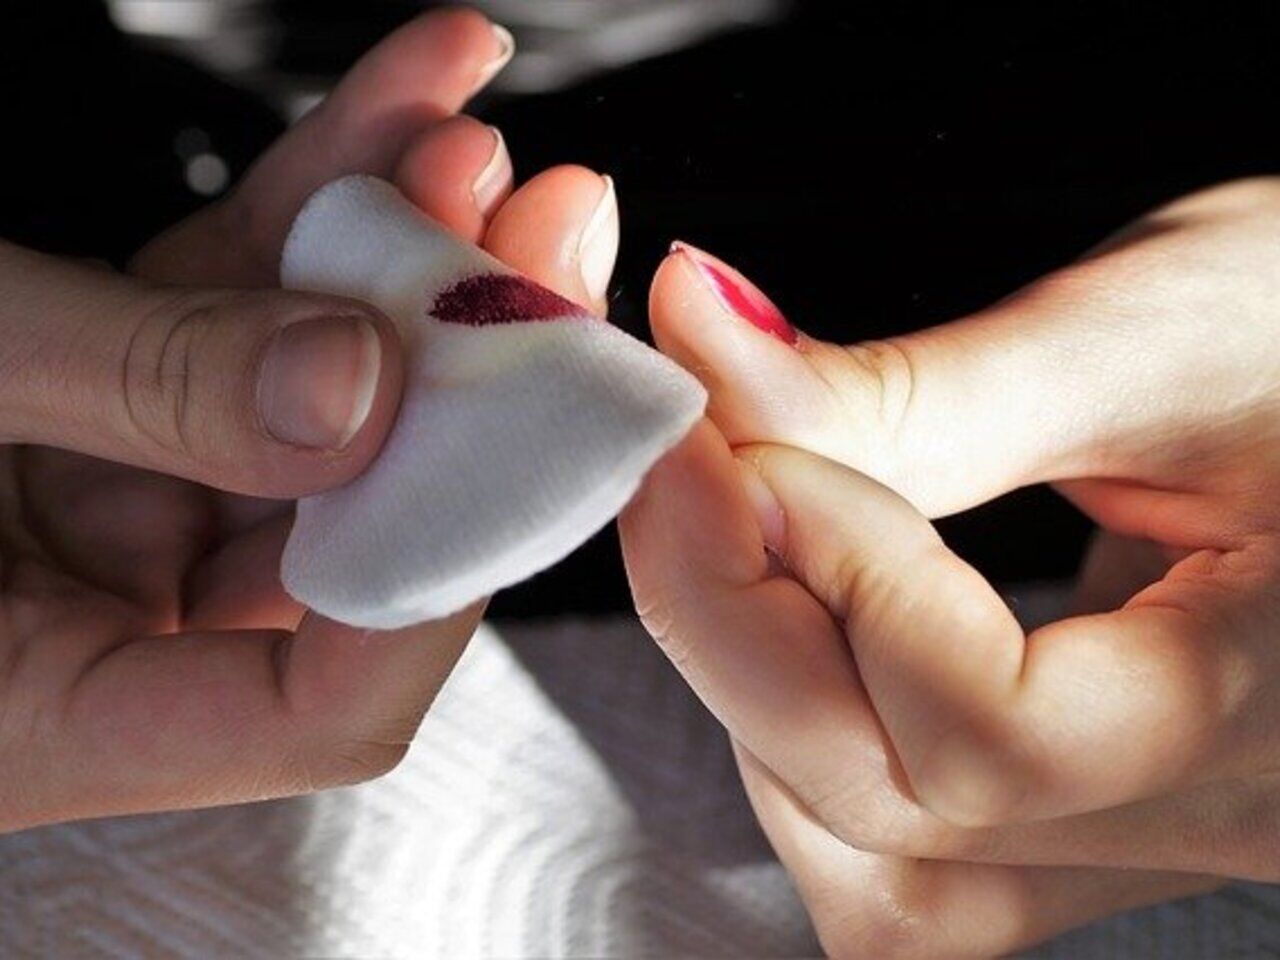 Черное пятно под ногтем: причины и лечение